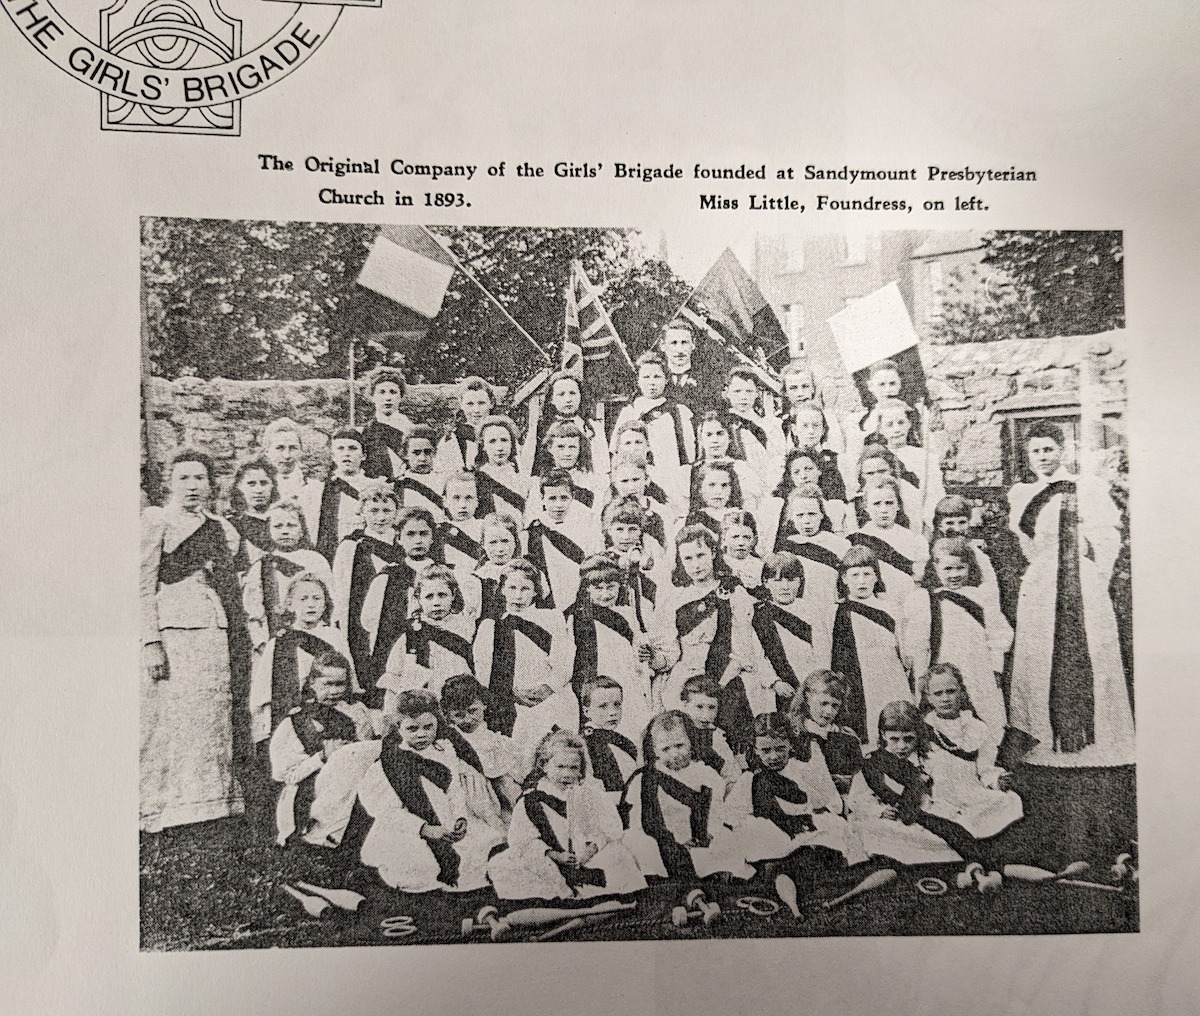 130 years of girls' empowerment: the history of the Girls' Brigade